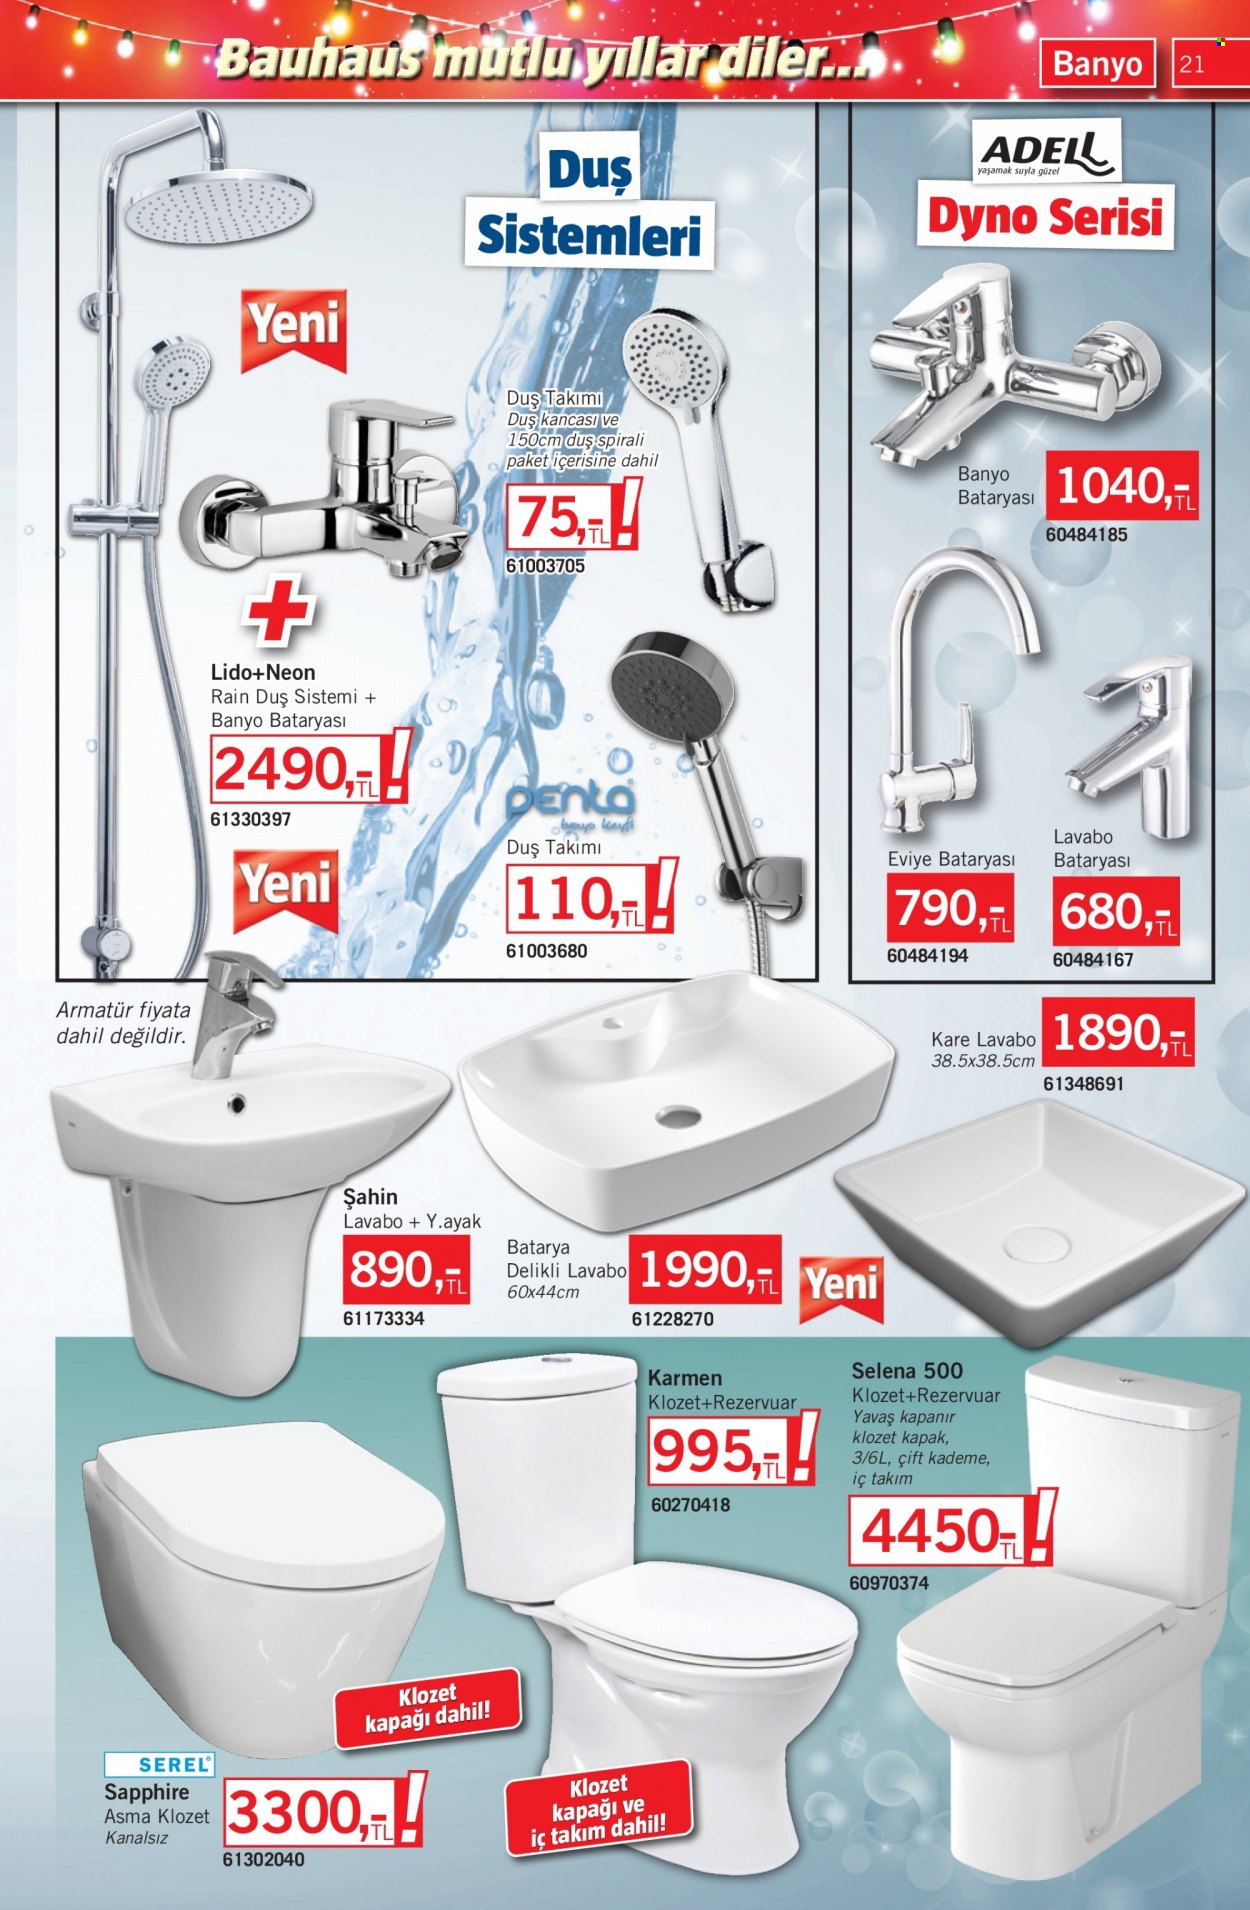 thumbnail - Bauhaus aktüel ürünler, broşür  - 12.3.2022 - 1.6.2023 - Satıştaki ürünler - lavabo bataryası, Eviye Bataryası, banyo bataryası, duş sistemleri, rezervuar. Sayfa 21.